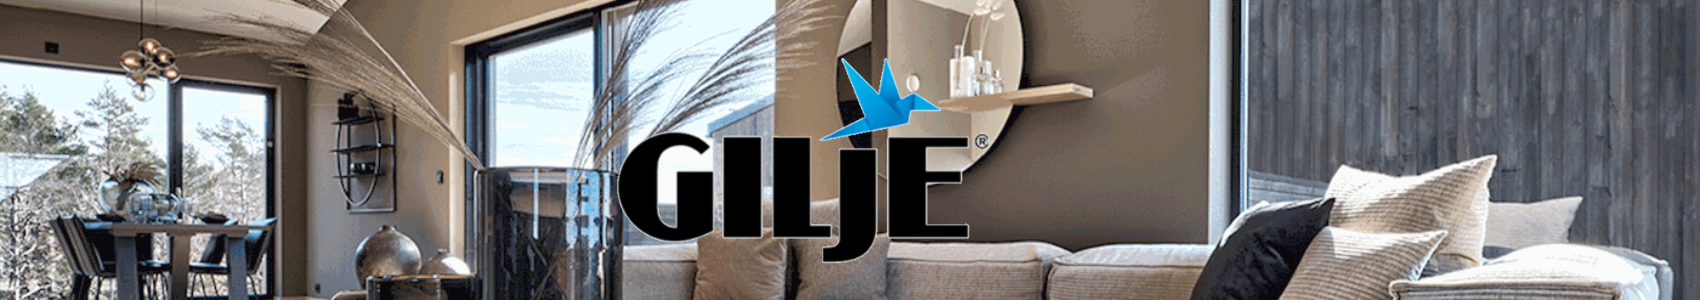 Gilje logo banner